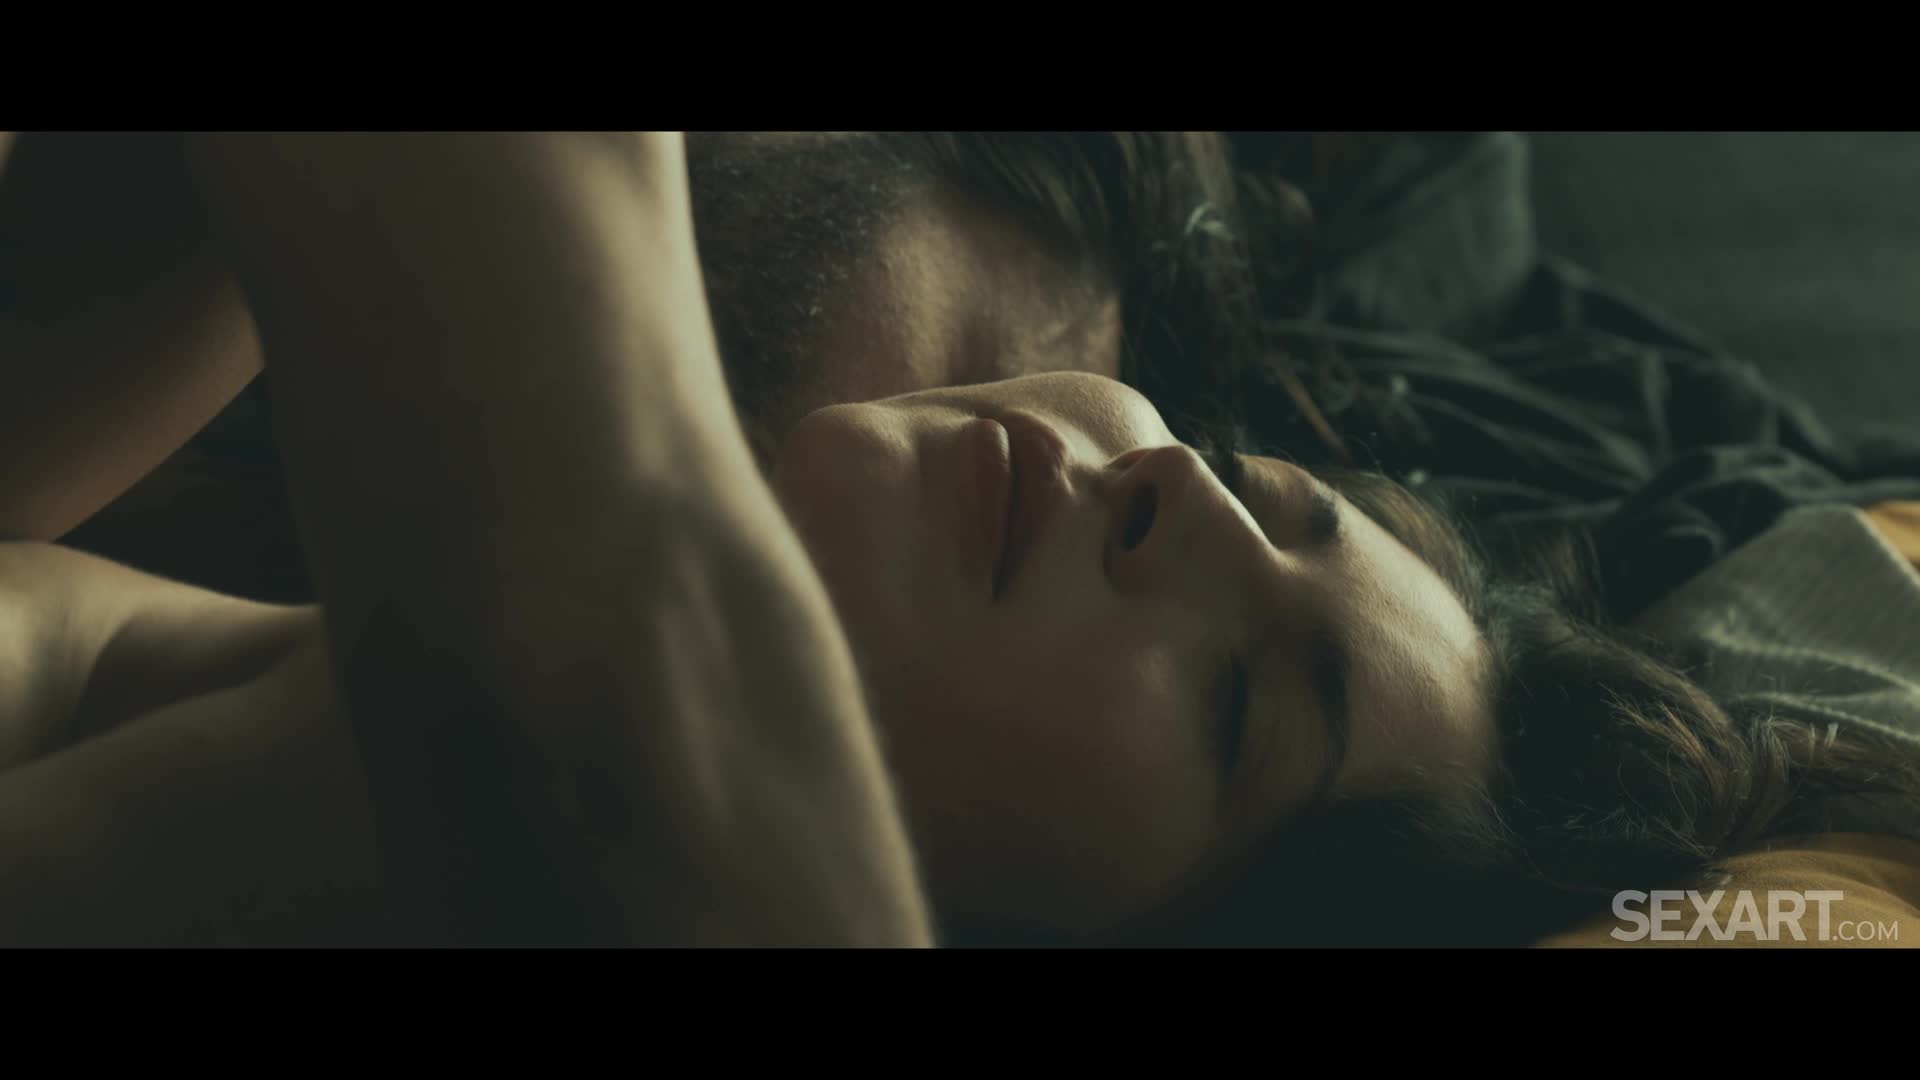 Helina Dream - Beautiful Morning [FullHD 1080p]